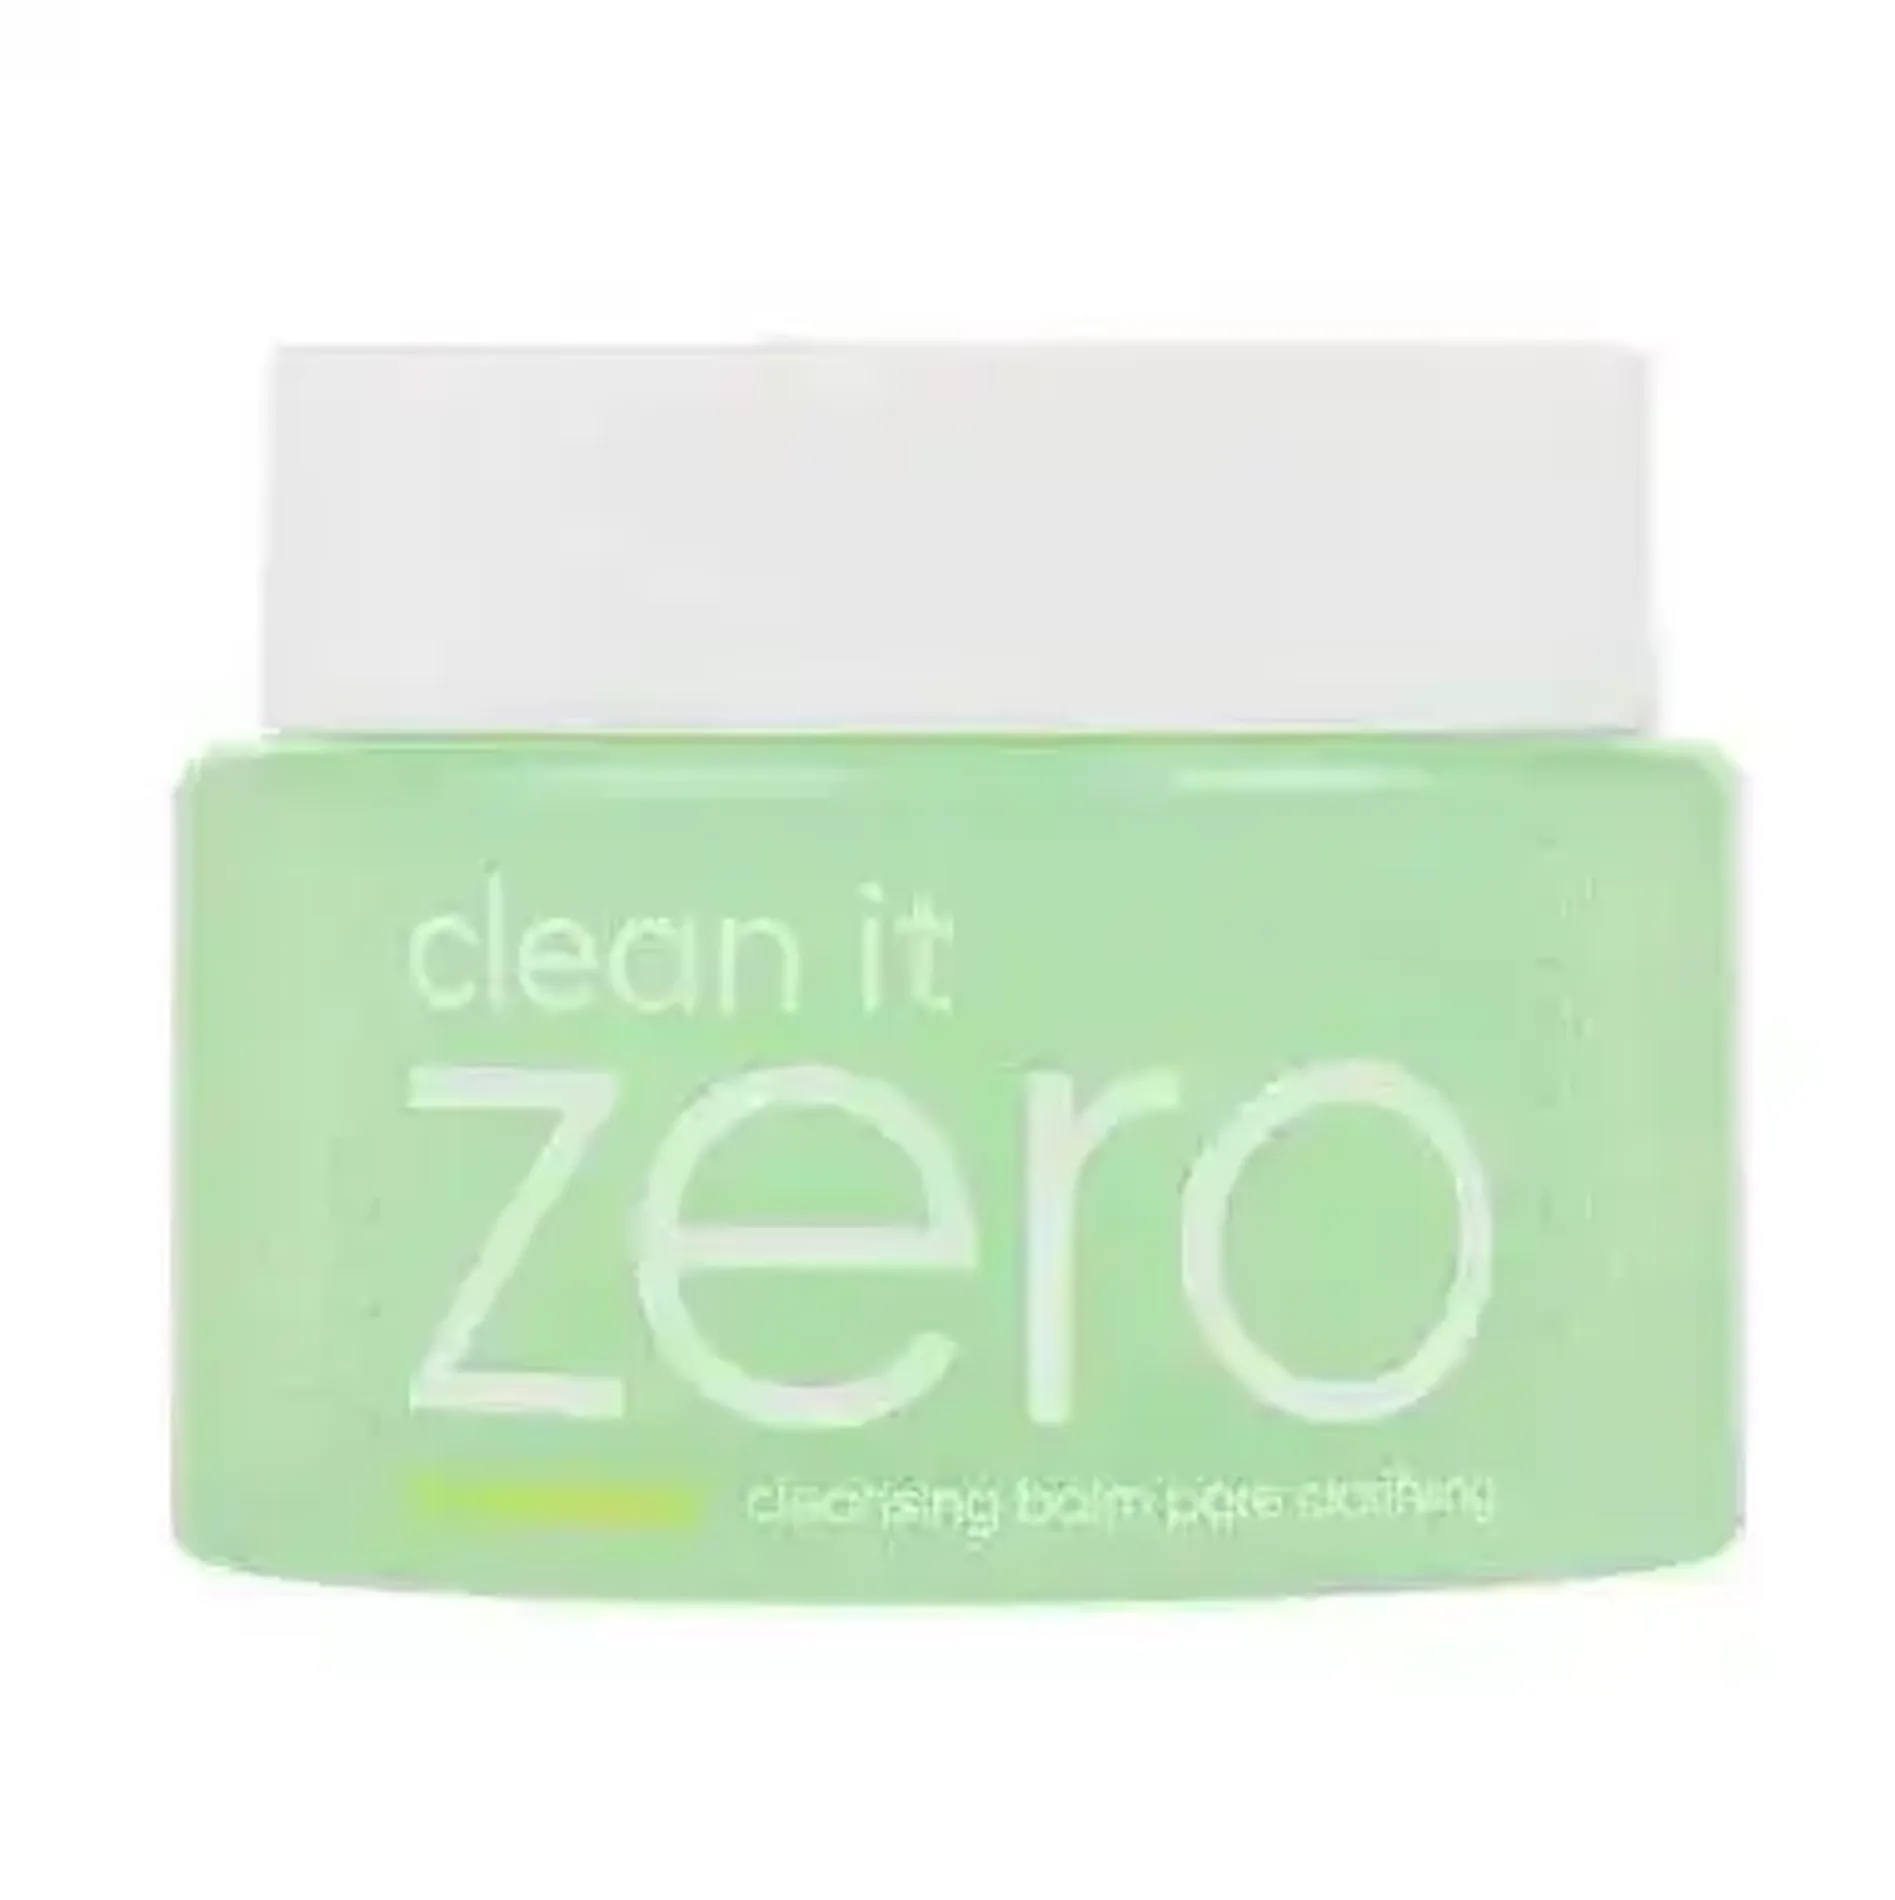 sap-tay-trang-cho-da-lo-chan-long-to-banila-co-clean-it-zero-cleansing-balm-pore-clarifying-100ml-1